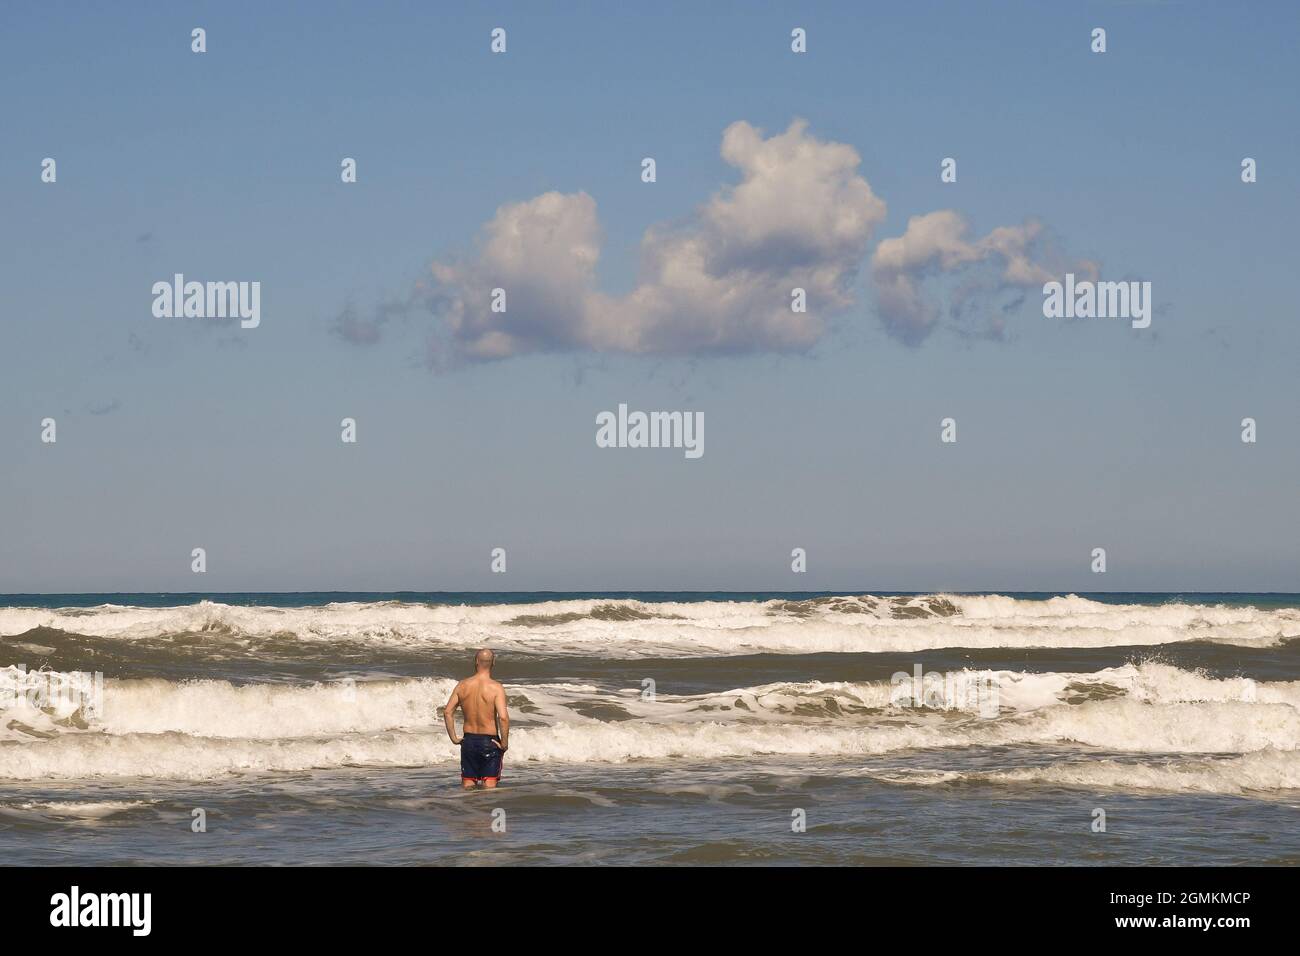 Vista posteriore di un uomo in piedi sulla riva del mare con alte onde bianche in una ventosa giornata estiva, Marina di Castagneto Carducci, Livorno, Toscana, Italia Foto Stock